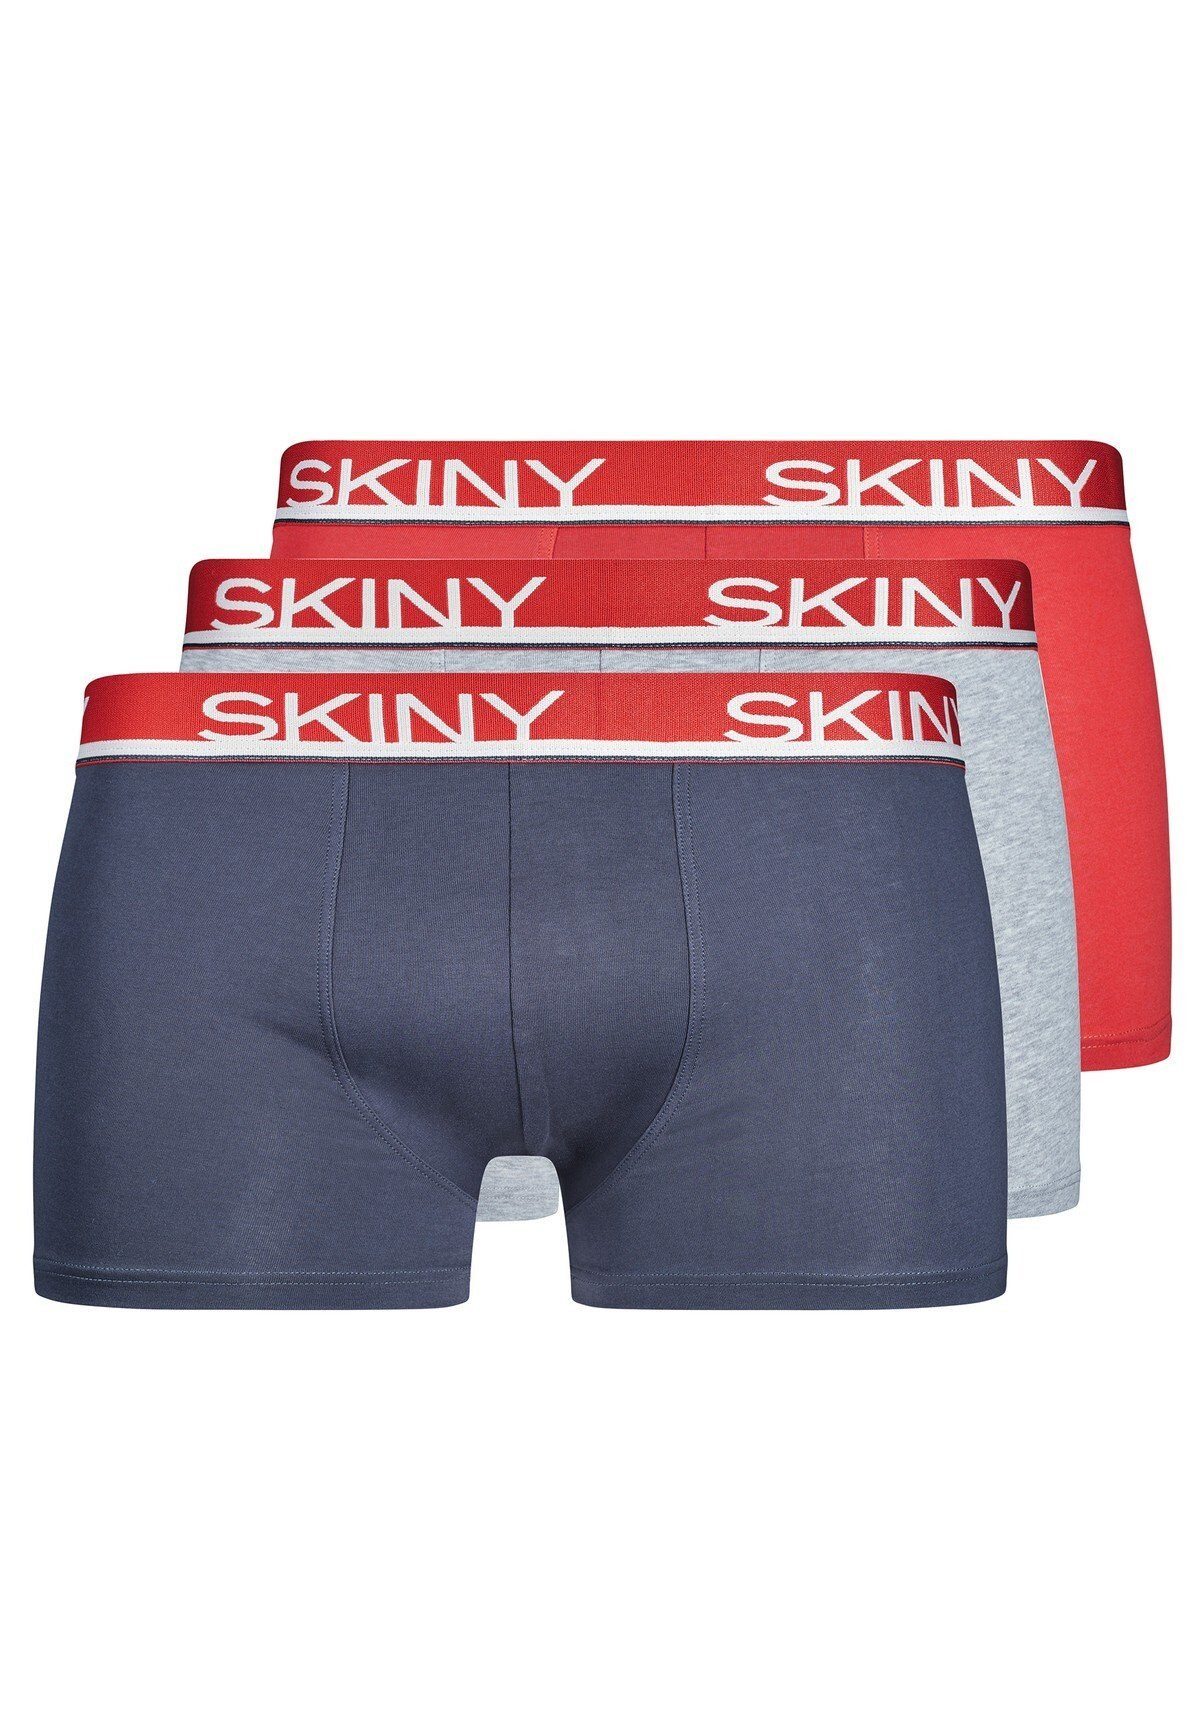 Skiny Boxer Herren Boxer Shorts 3er Pack - Trunks, Pants Blau/Grau/Rot